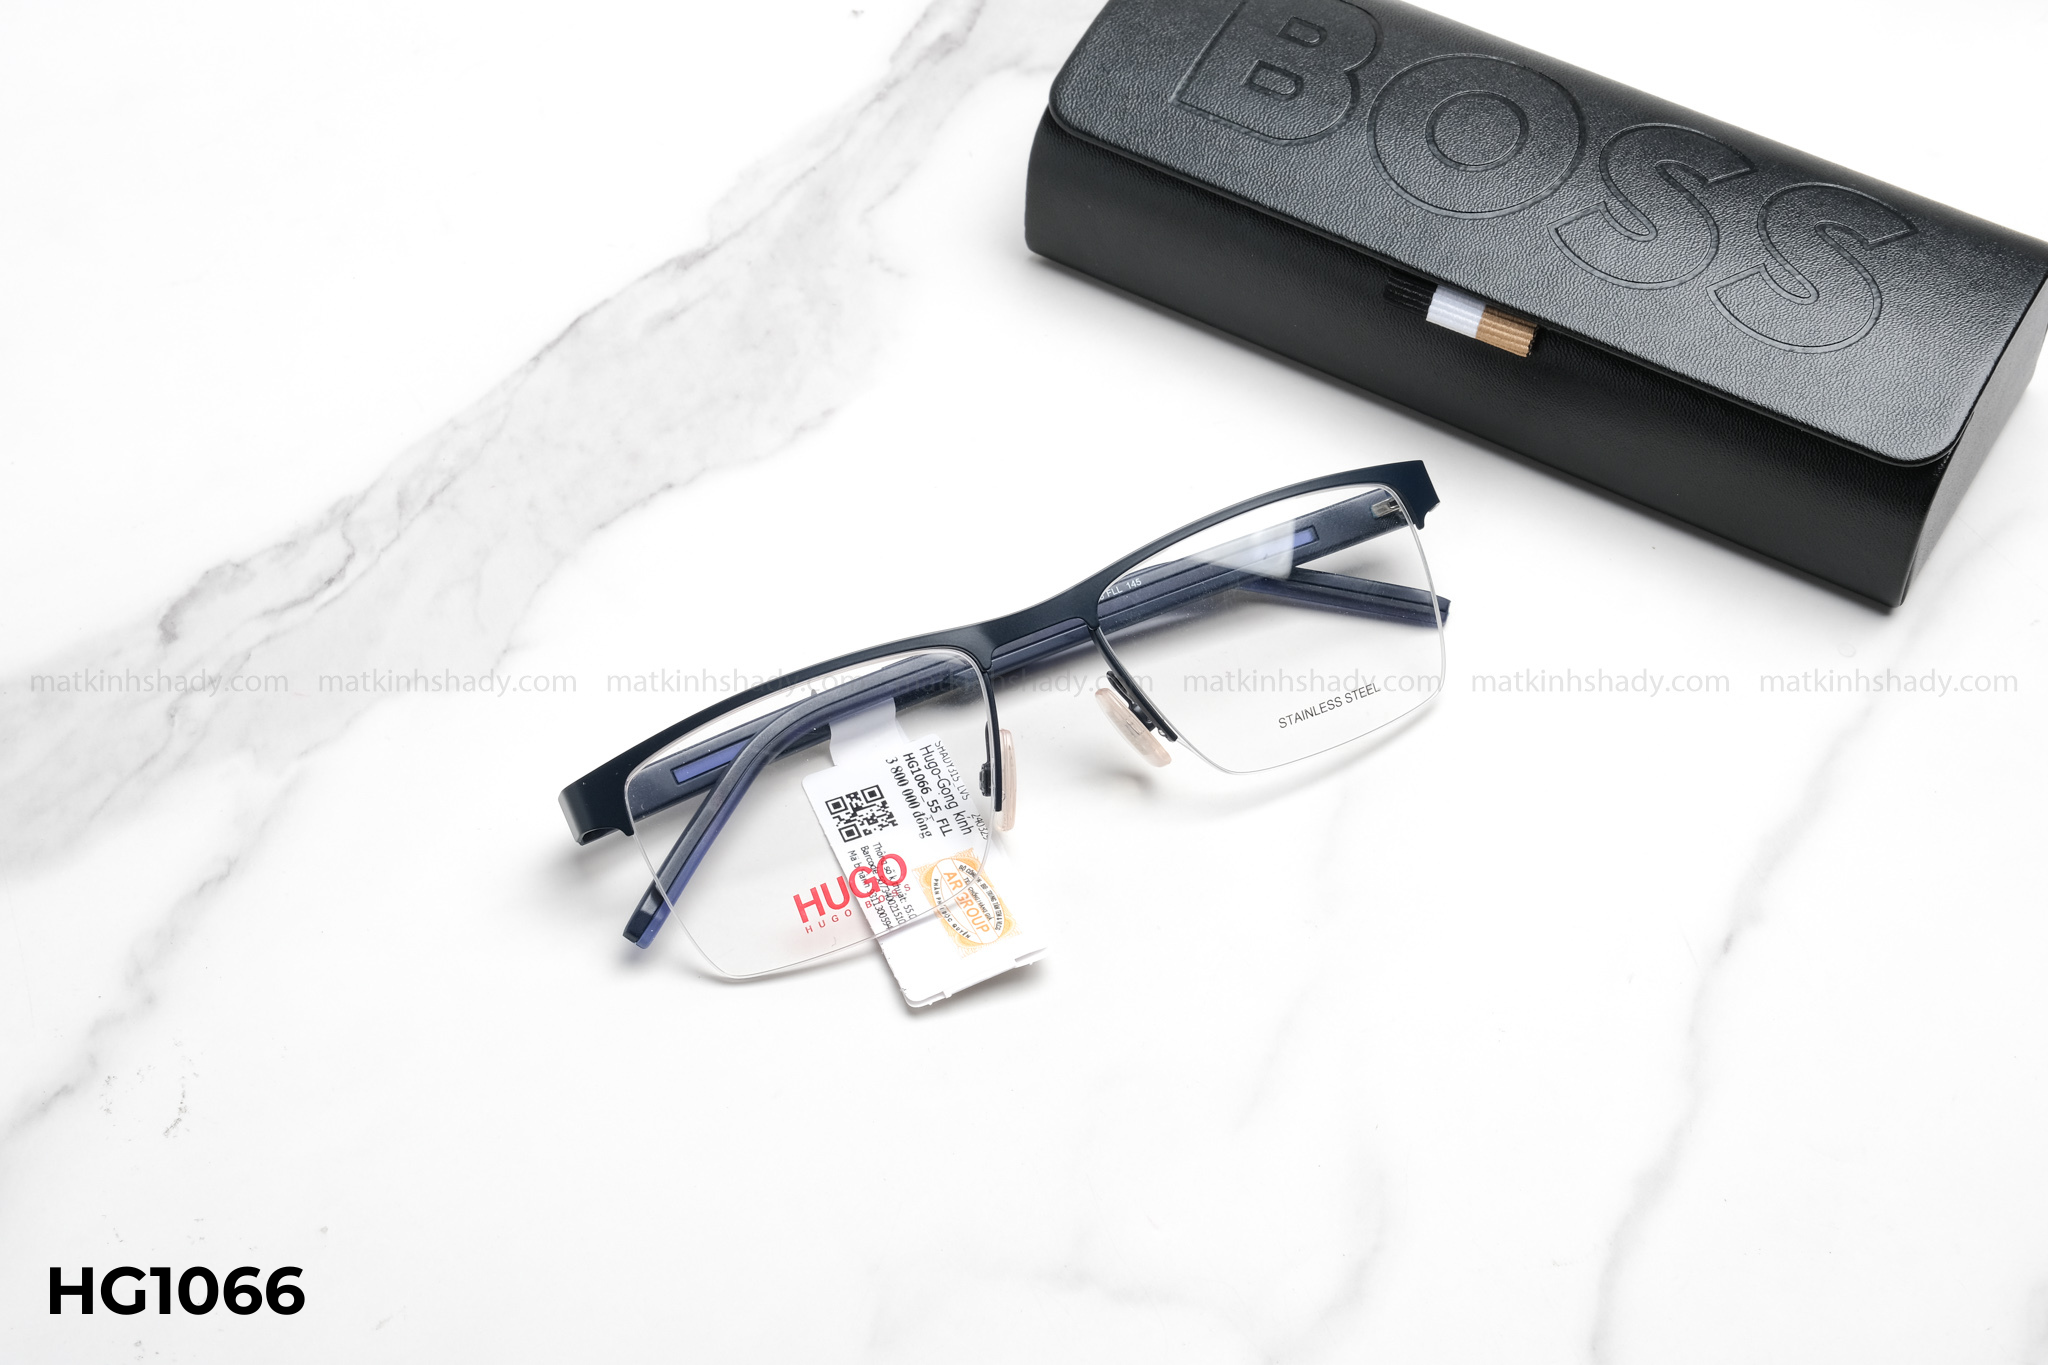  Hugo Boss Eyewear - Glasses - HG1066 